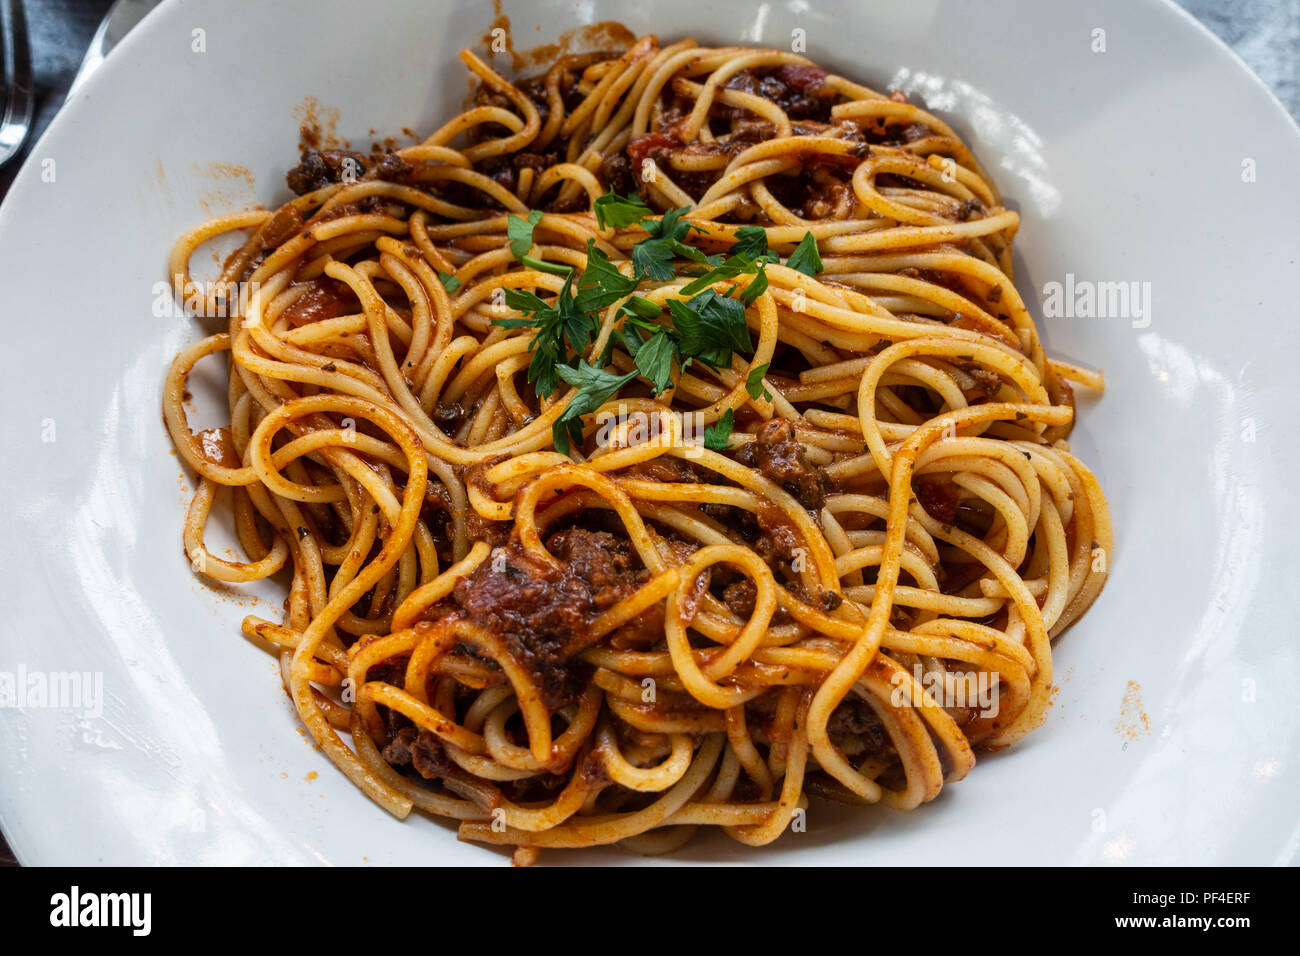 Una ciotola di spaghetti bolognese server in una vaschetta bianca in un ristorante italiano. Foto Stock